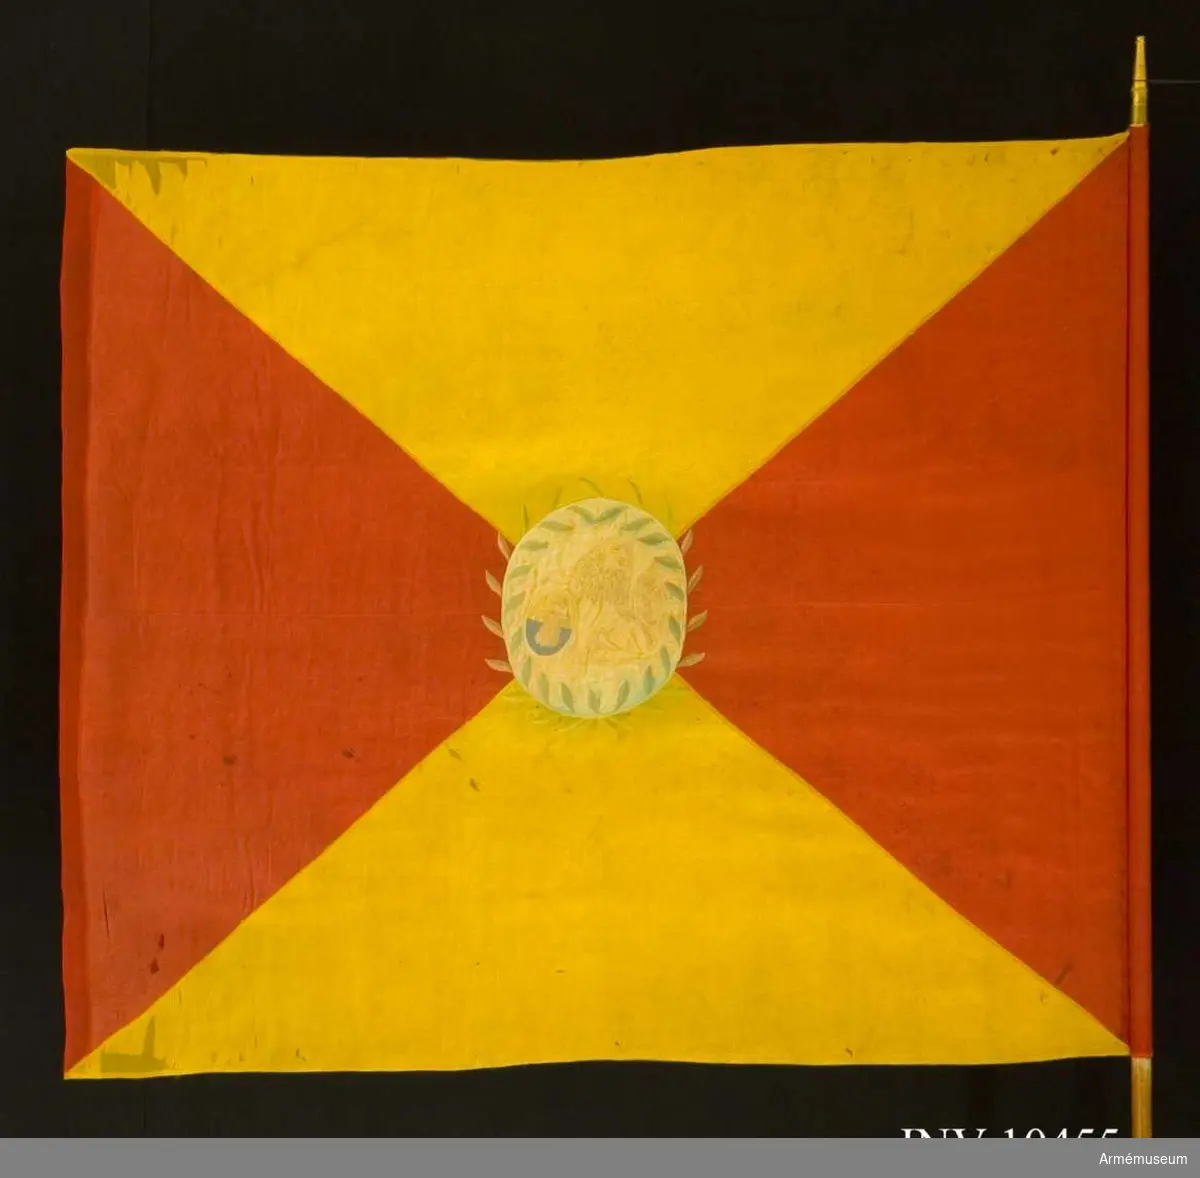 Grupp B I.

Kompanifana för Adlercreutzska regementet, som 1807 sytts om till kompanifana för Norra och Södra Skånska infanteriregementet 1812. 

Duk av sidenkypert, fyrstyckad röd och gul, i mitten broderat en sköld med Skånes vapen, omgivet av en lagerkrans.